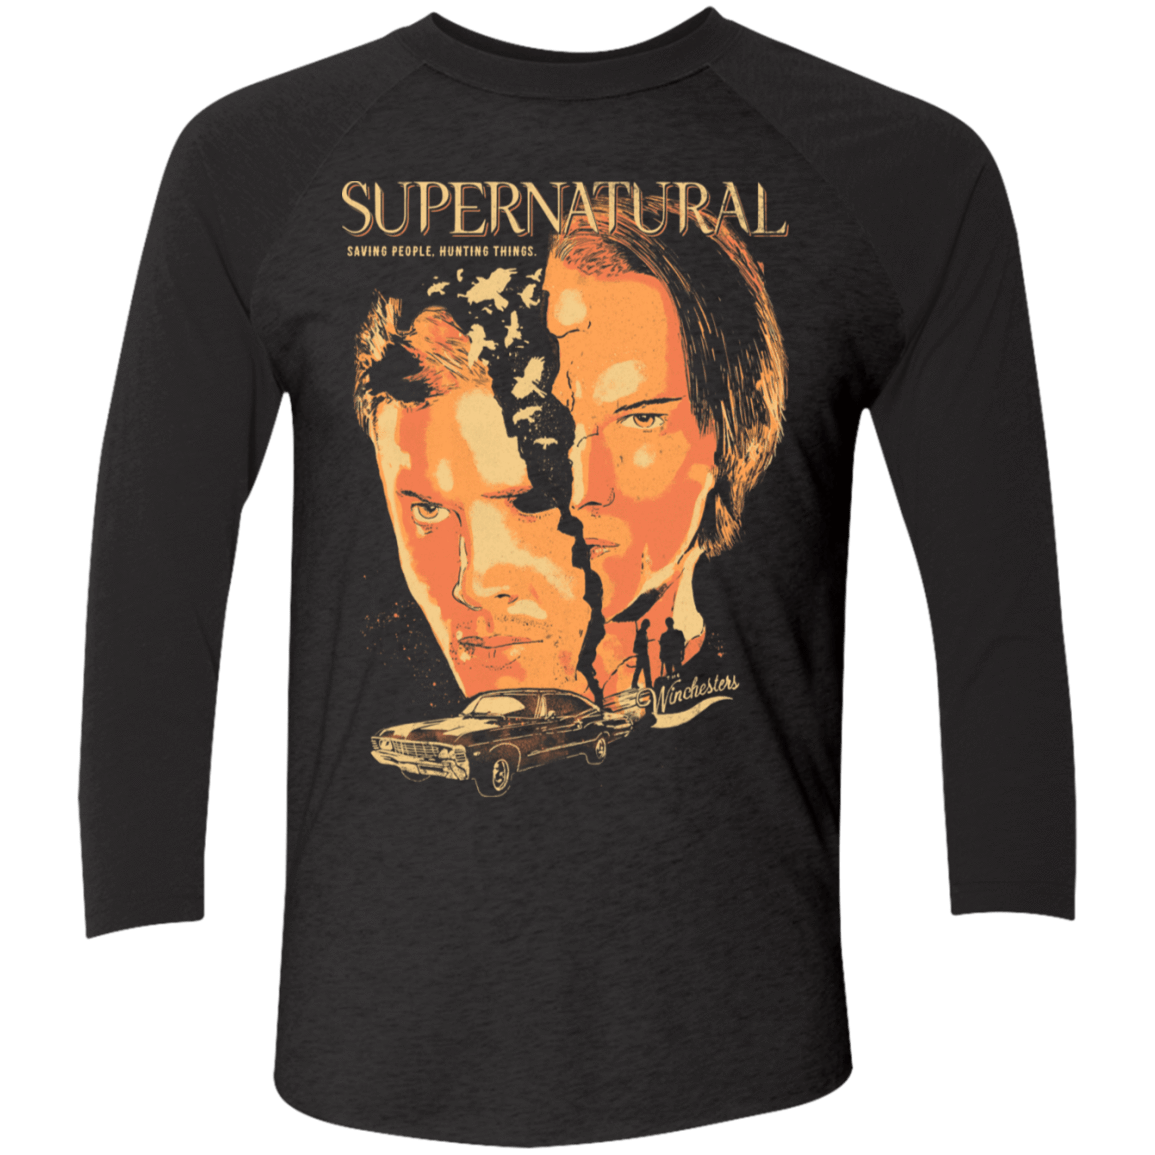 T-Shirts Vintage Black/Vintage Black / X-Small Supernatural Men's Triblend 3/4 Sleeve